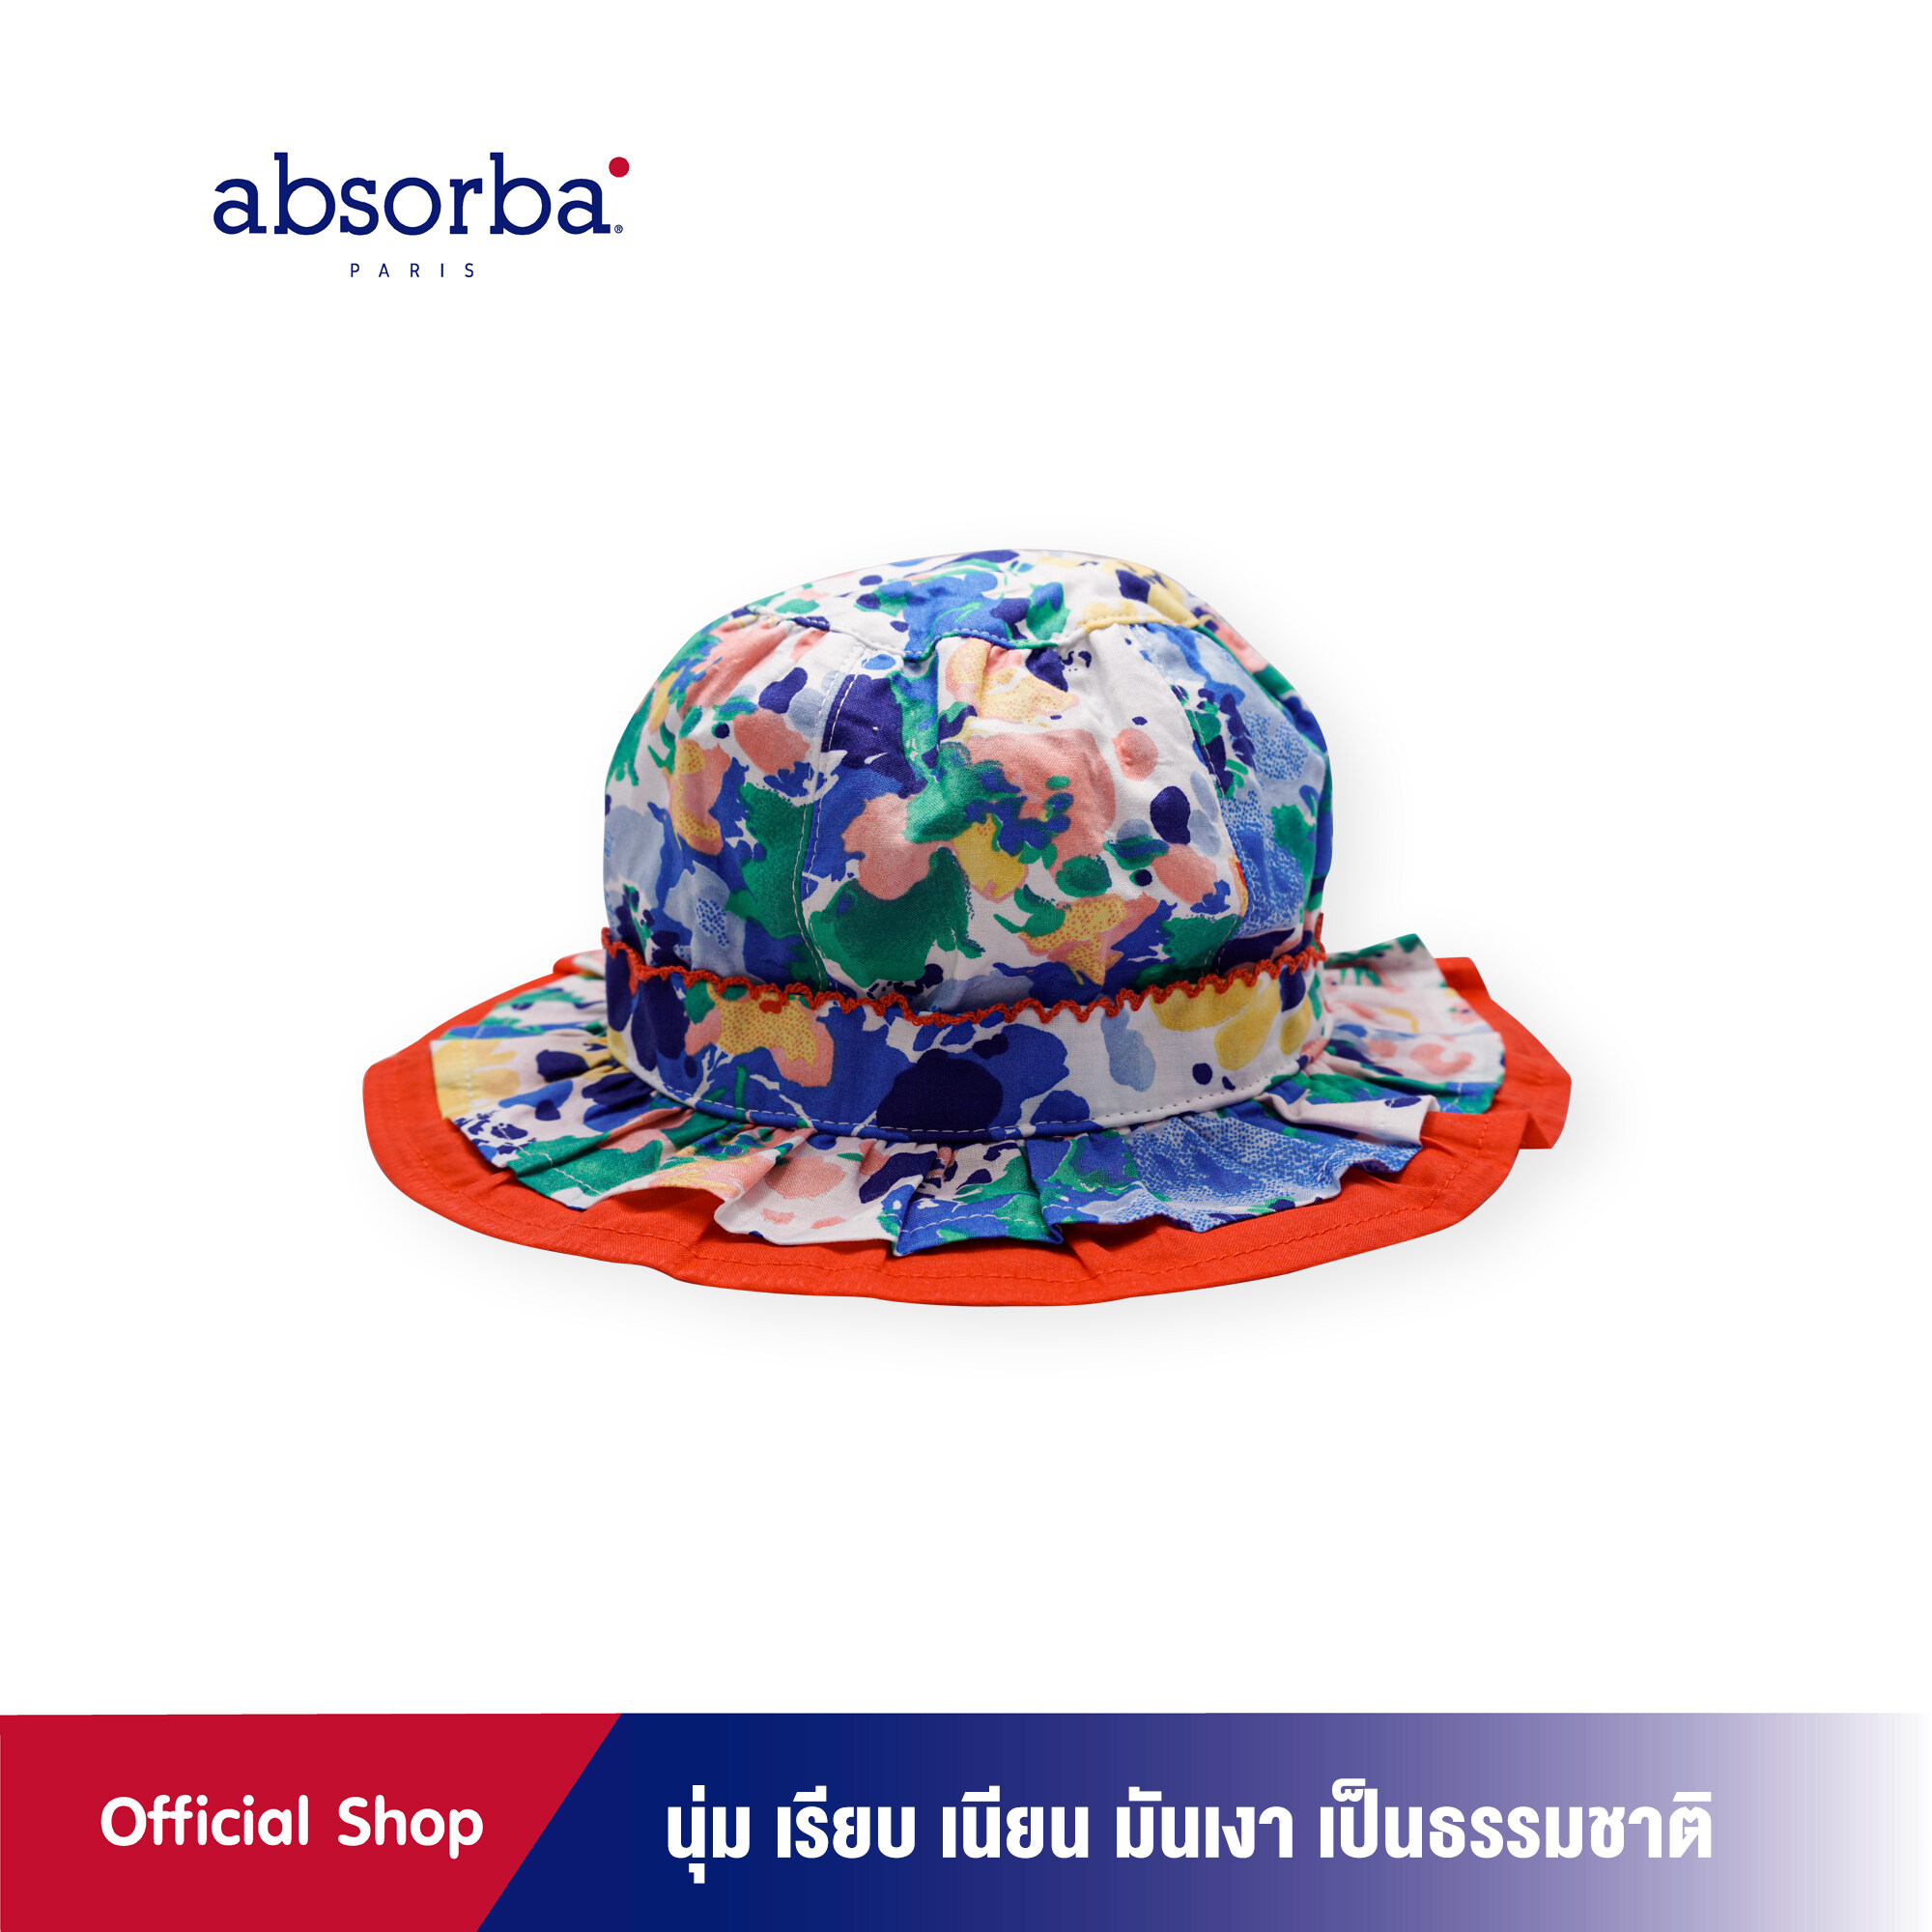 ราคา absorba (แอ็บซอร์บา) หมวกแฟชั่นเด็กหญิง คอลเลคชั่น JARDIN สำหรับเด็ก 6 เดือน- 2 ปี แพ็ค 1 ใบ -R1G5015